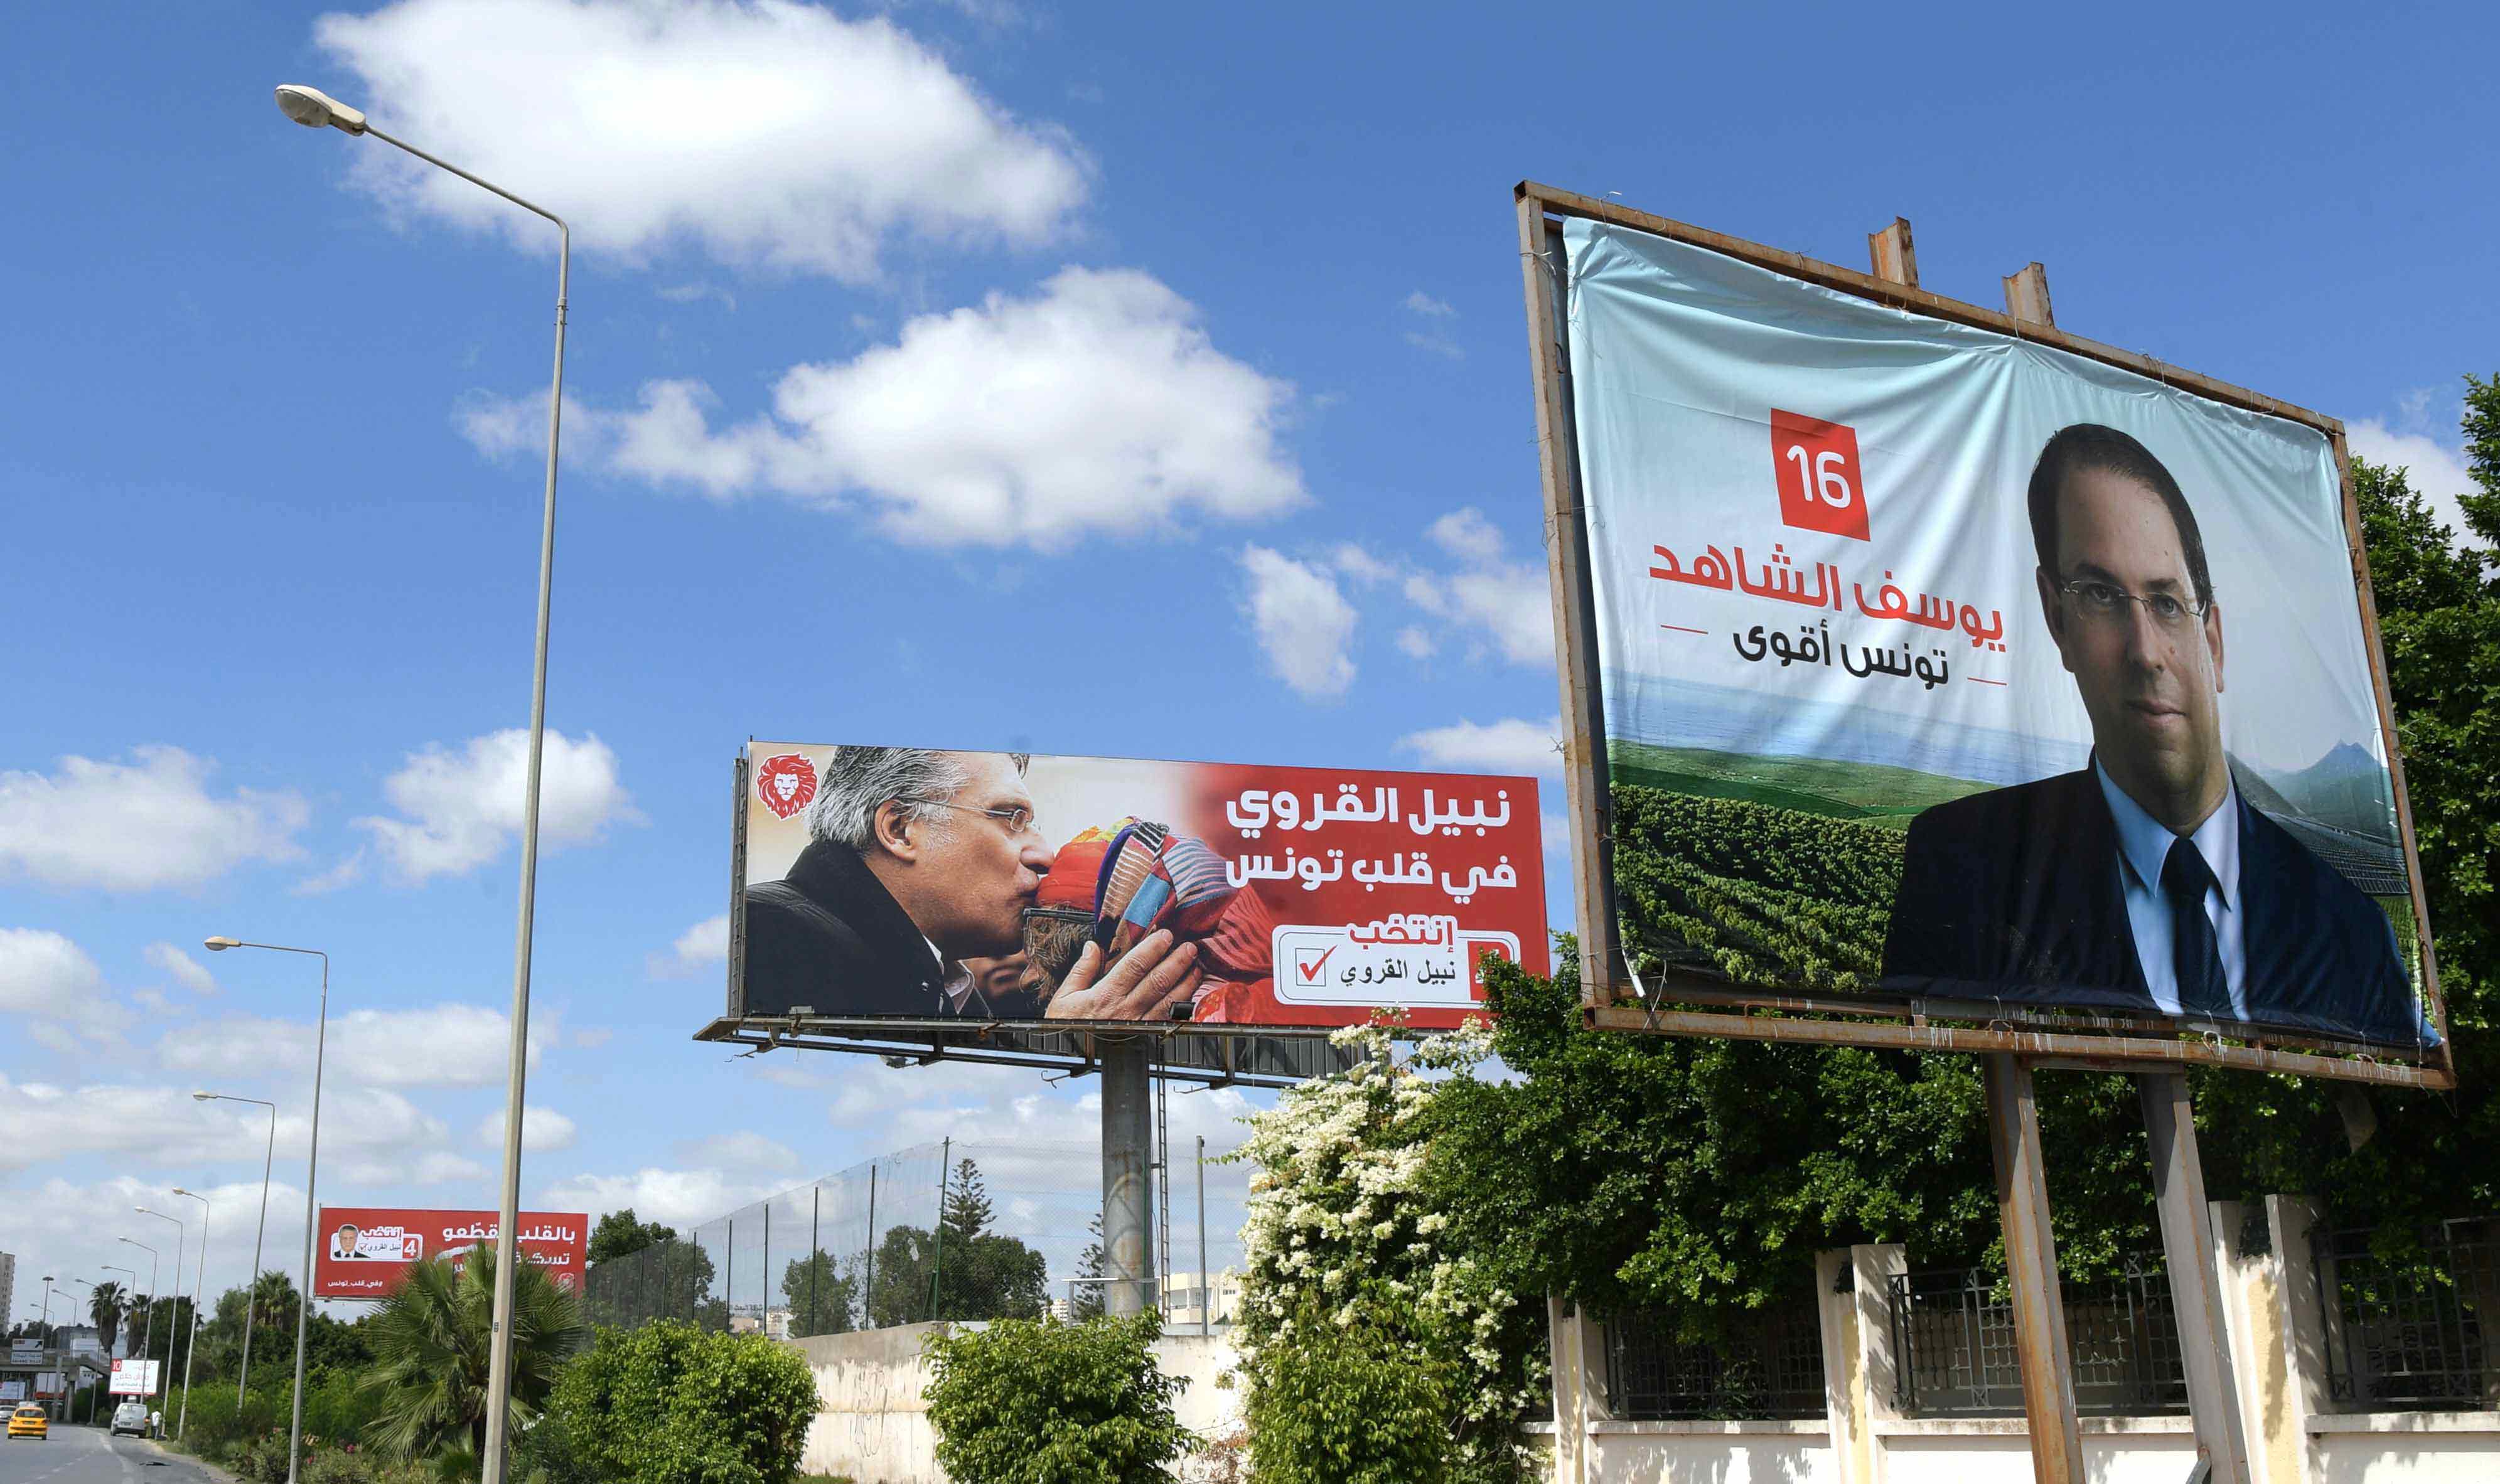 لوبيات سياسية ومالية ودينية تهيمن على المشهد السياسي في تونس